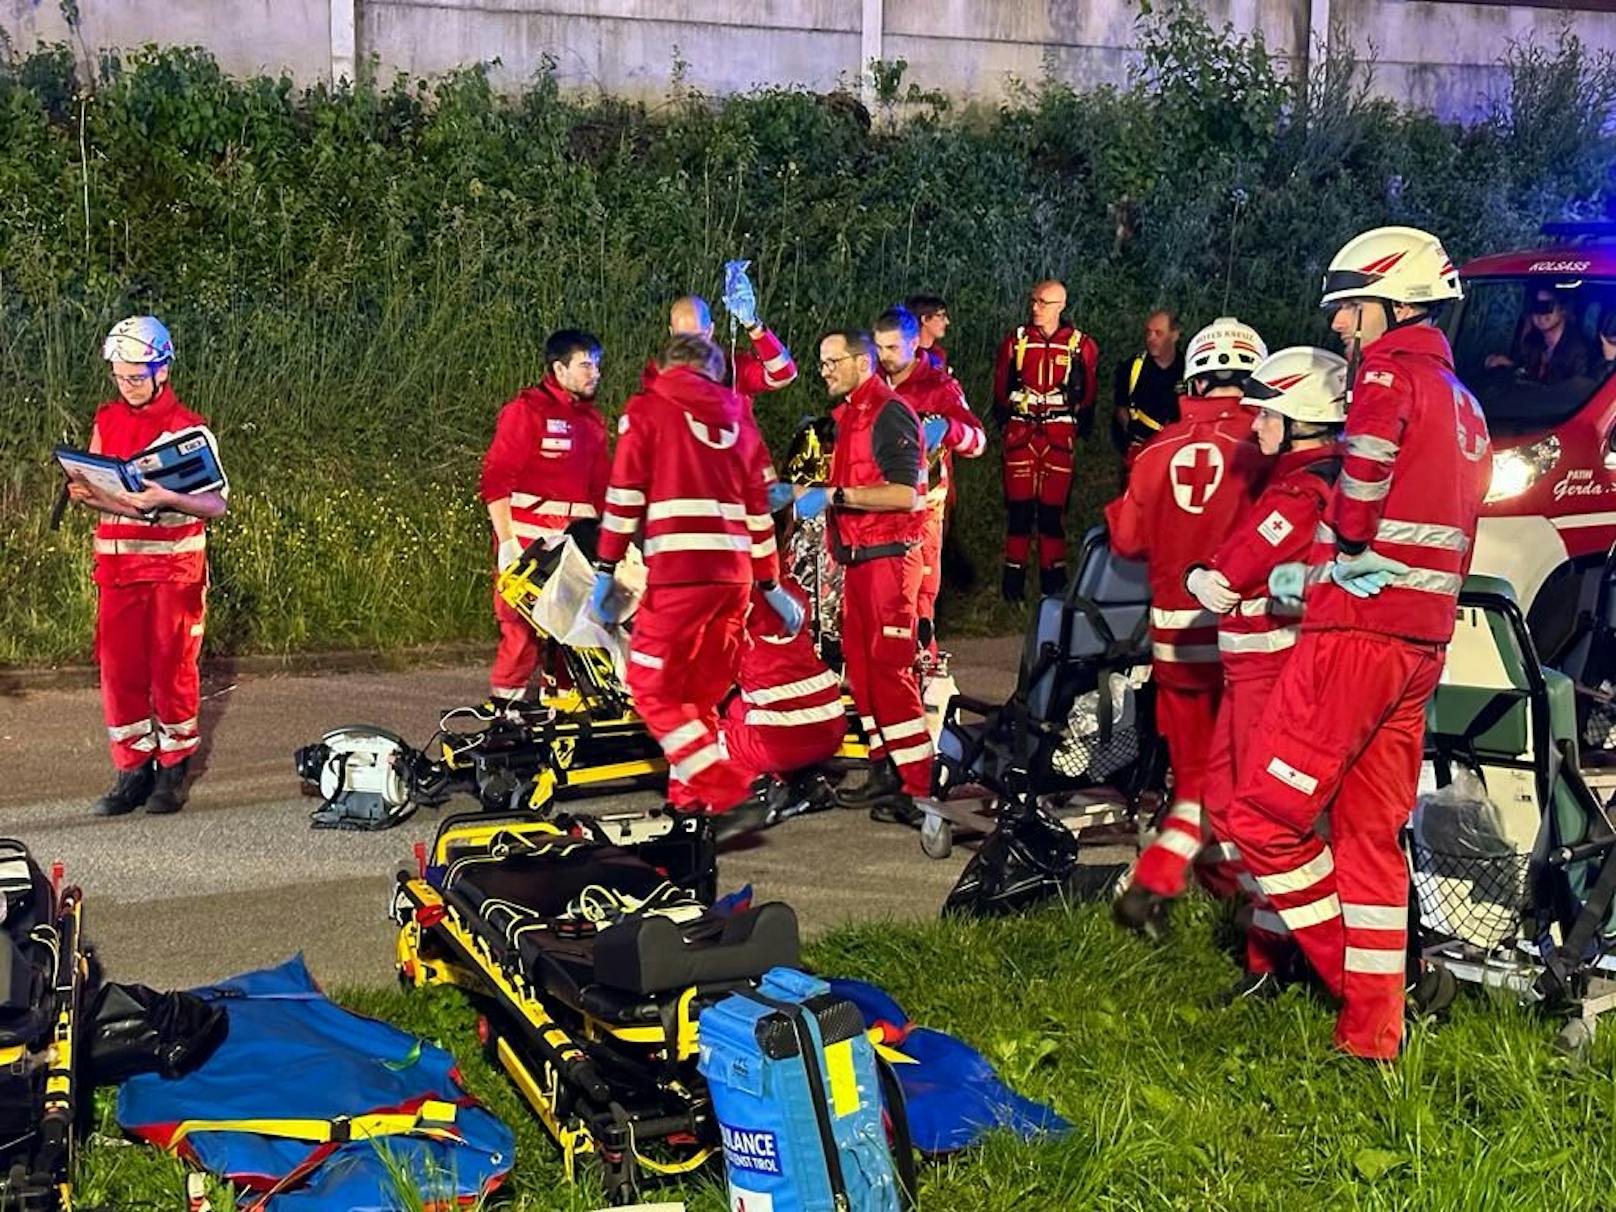 Evakuierung eines vollbesetzten Nightjets im Terfener Tunnel in Tirol! 200 Menschen wurden in Sicherheit gebracht, Autos auf dem Zug brannten.